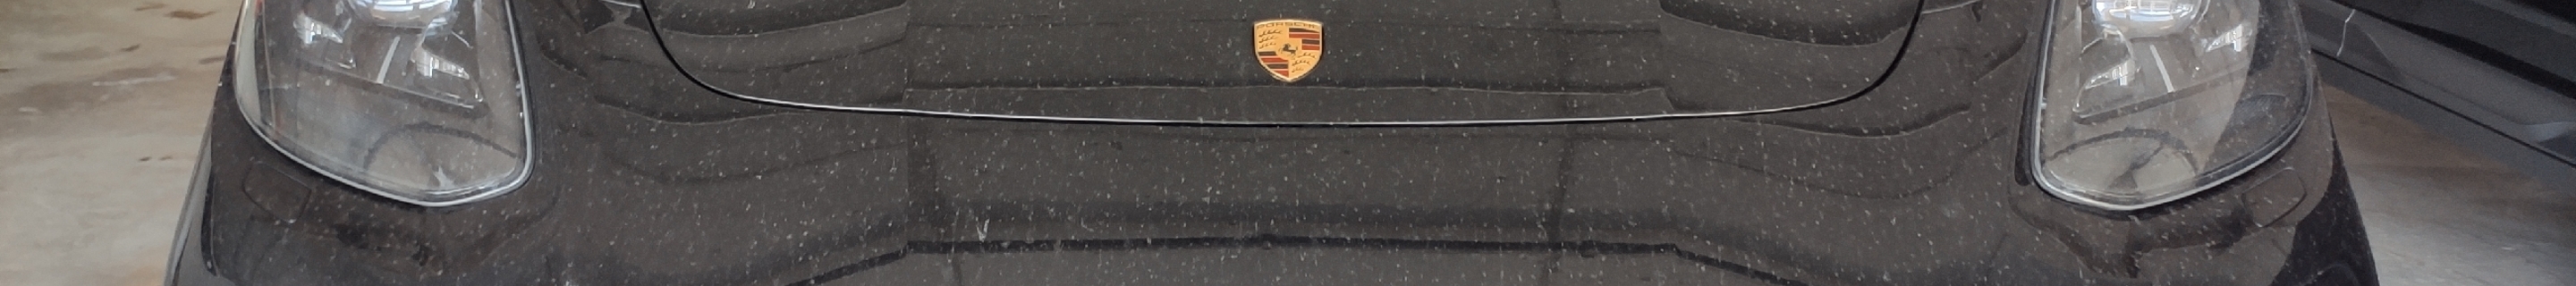 Porsche 971 Panamera Turbo S E-Hybrid